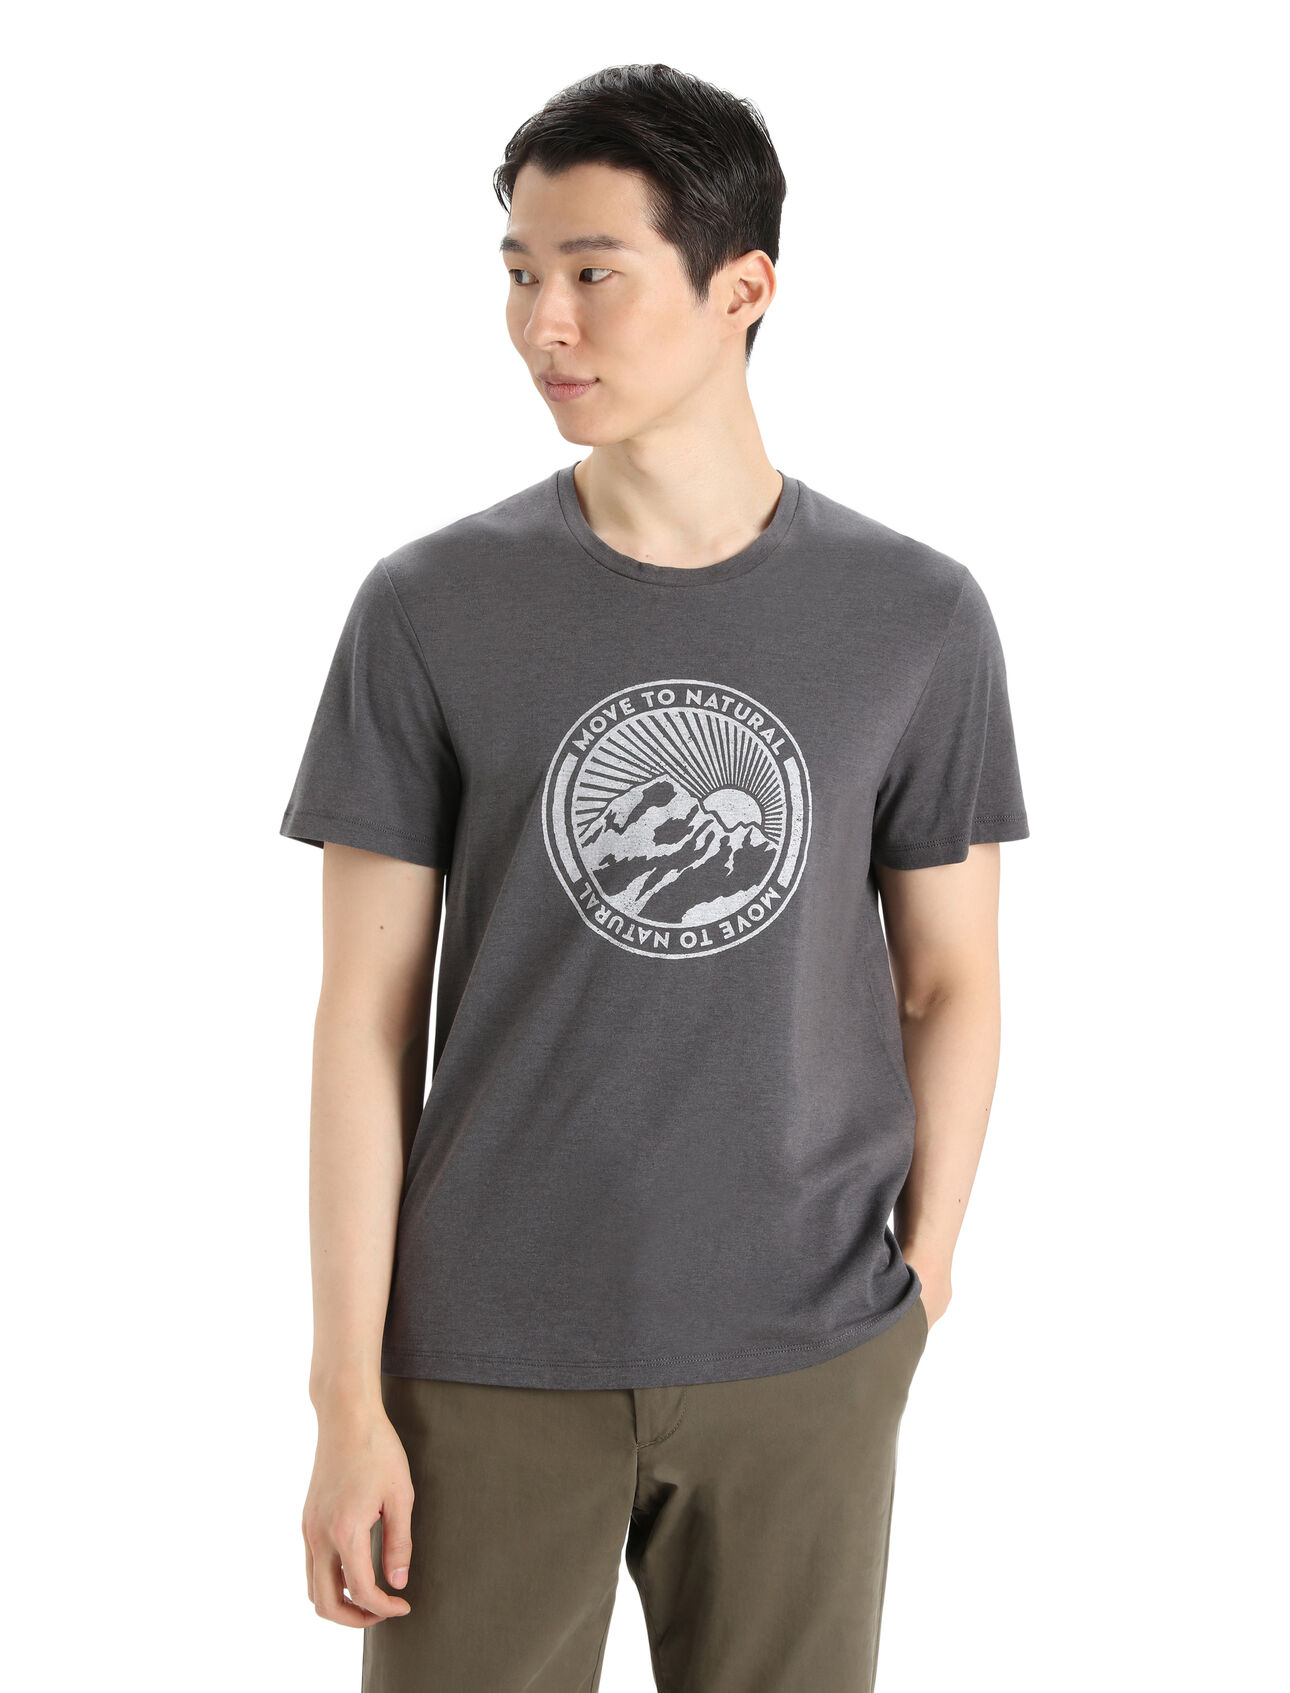 T-shirt Central Classic manches courtes en mérinos - Move to Natural Mountain